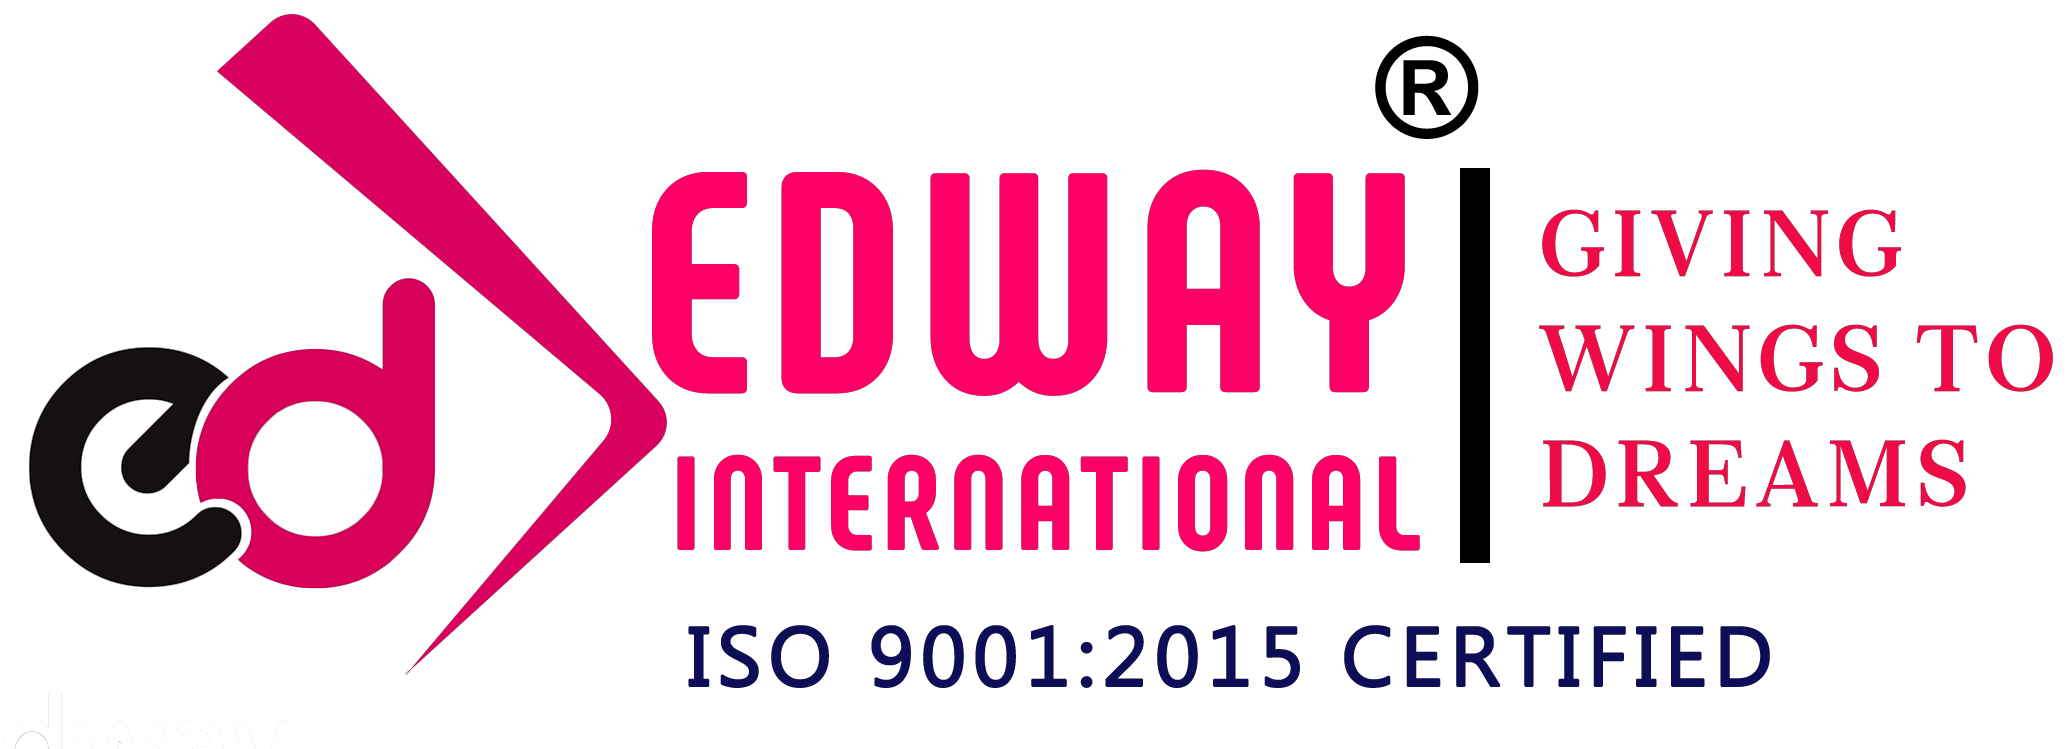 Edway International